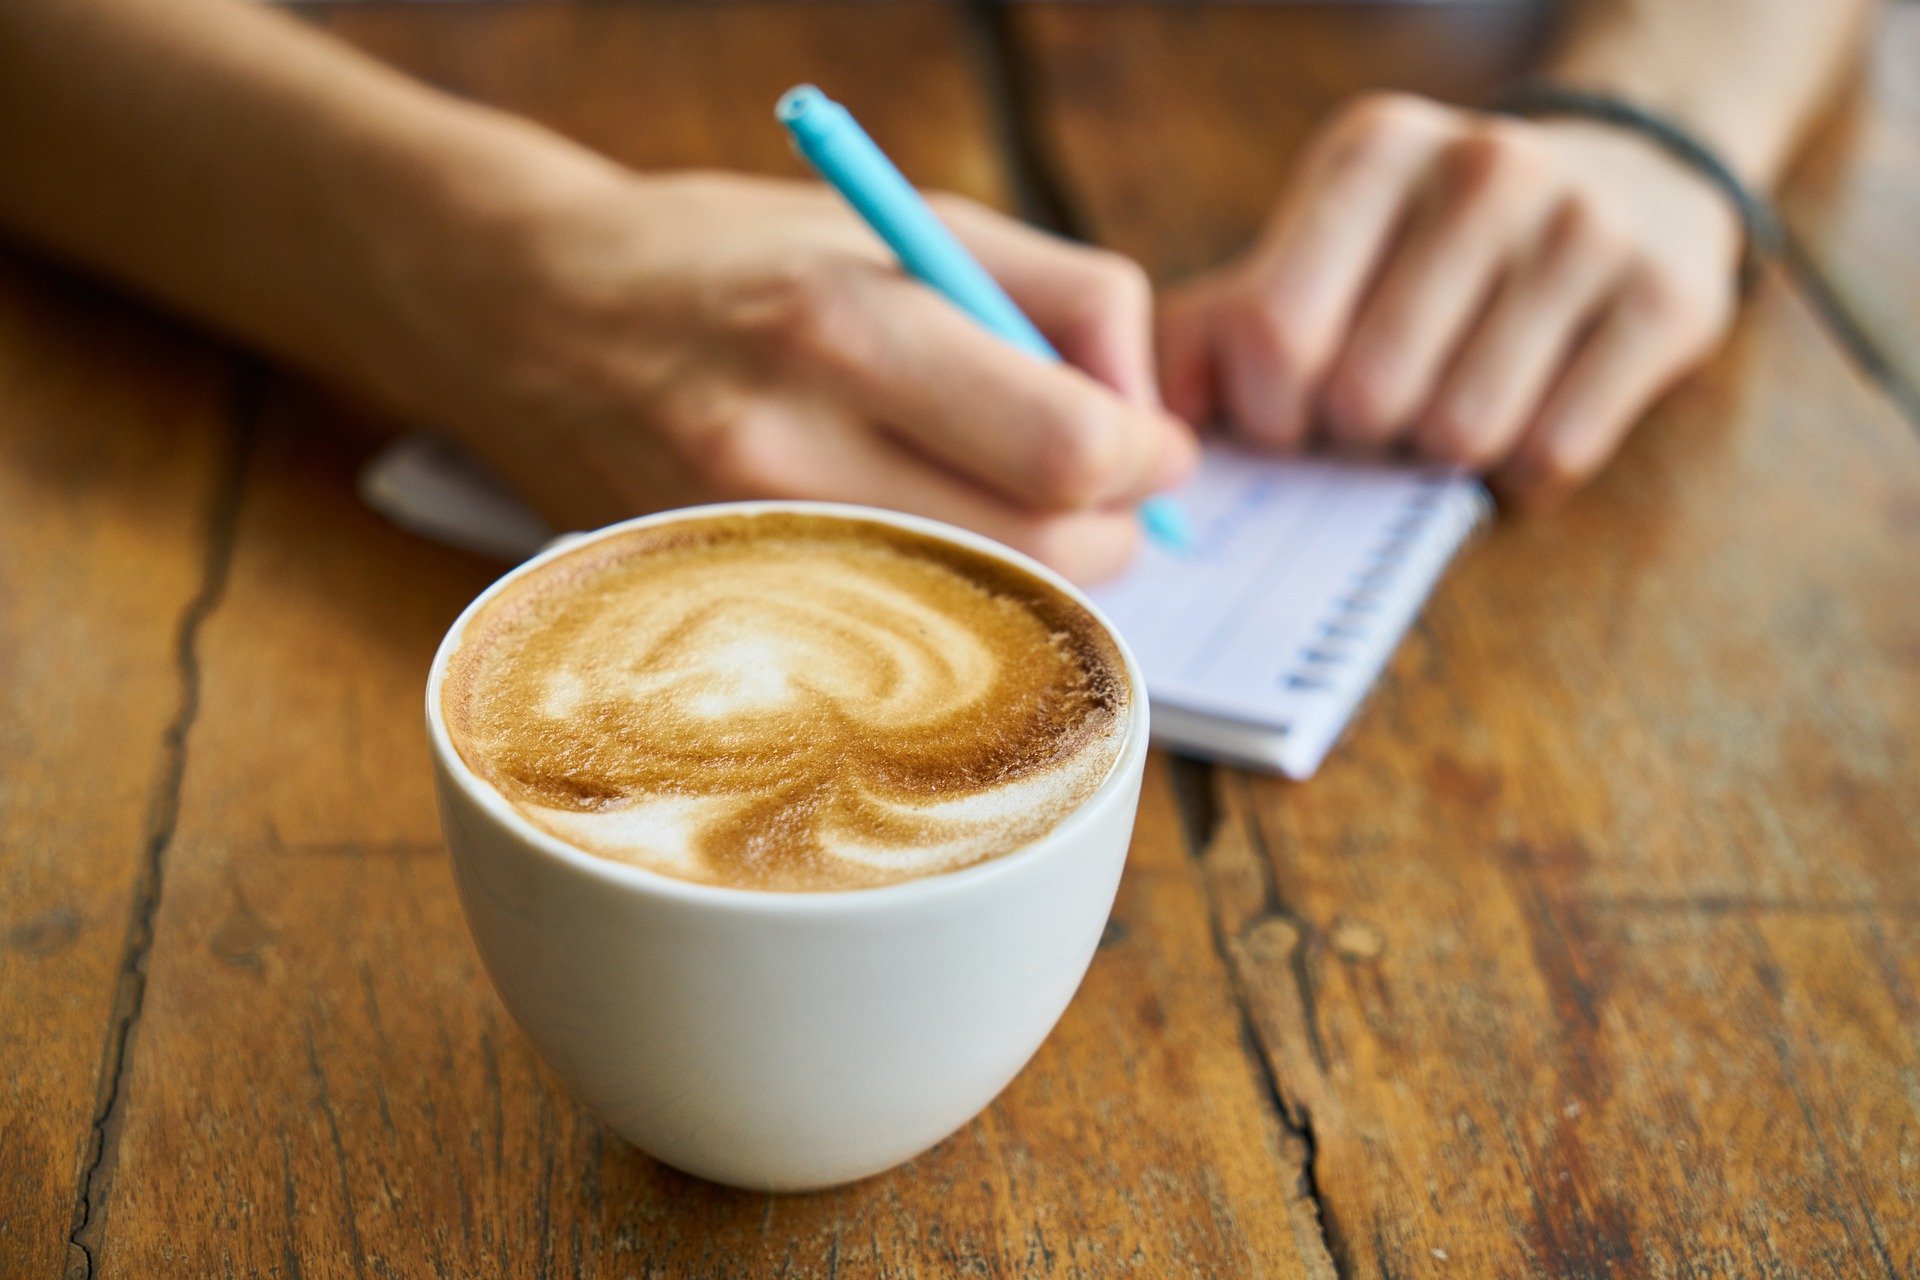 ¿Enganchado al café?: los pasos para vencer la adicción a la cafeína